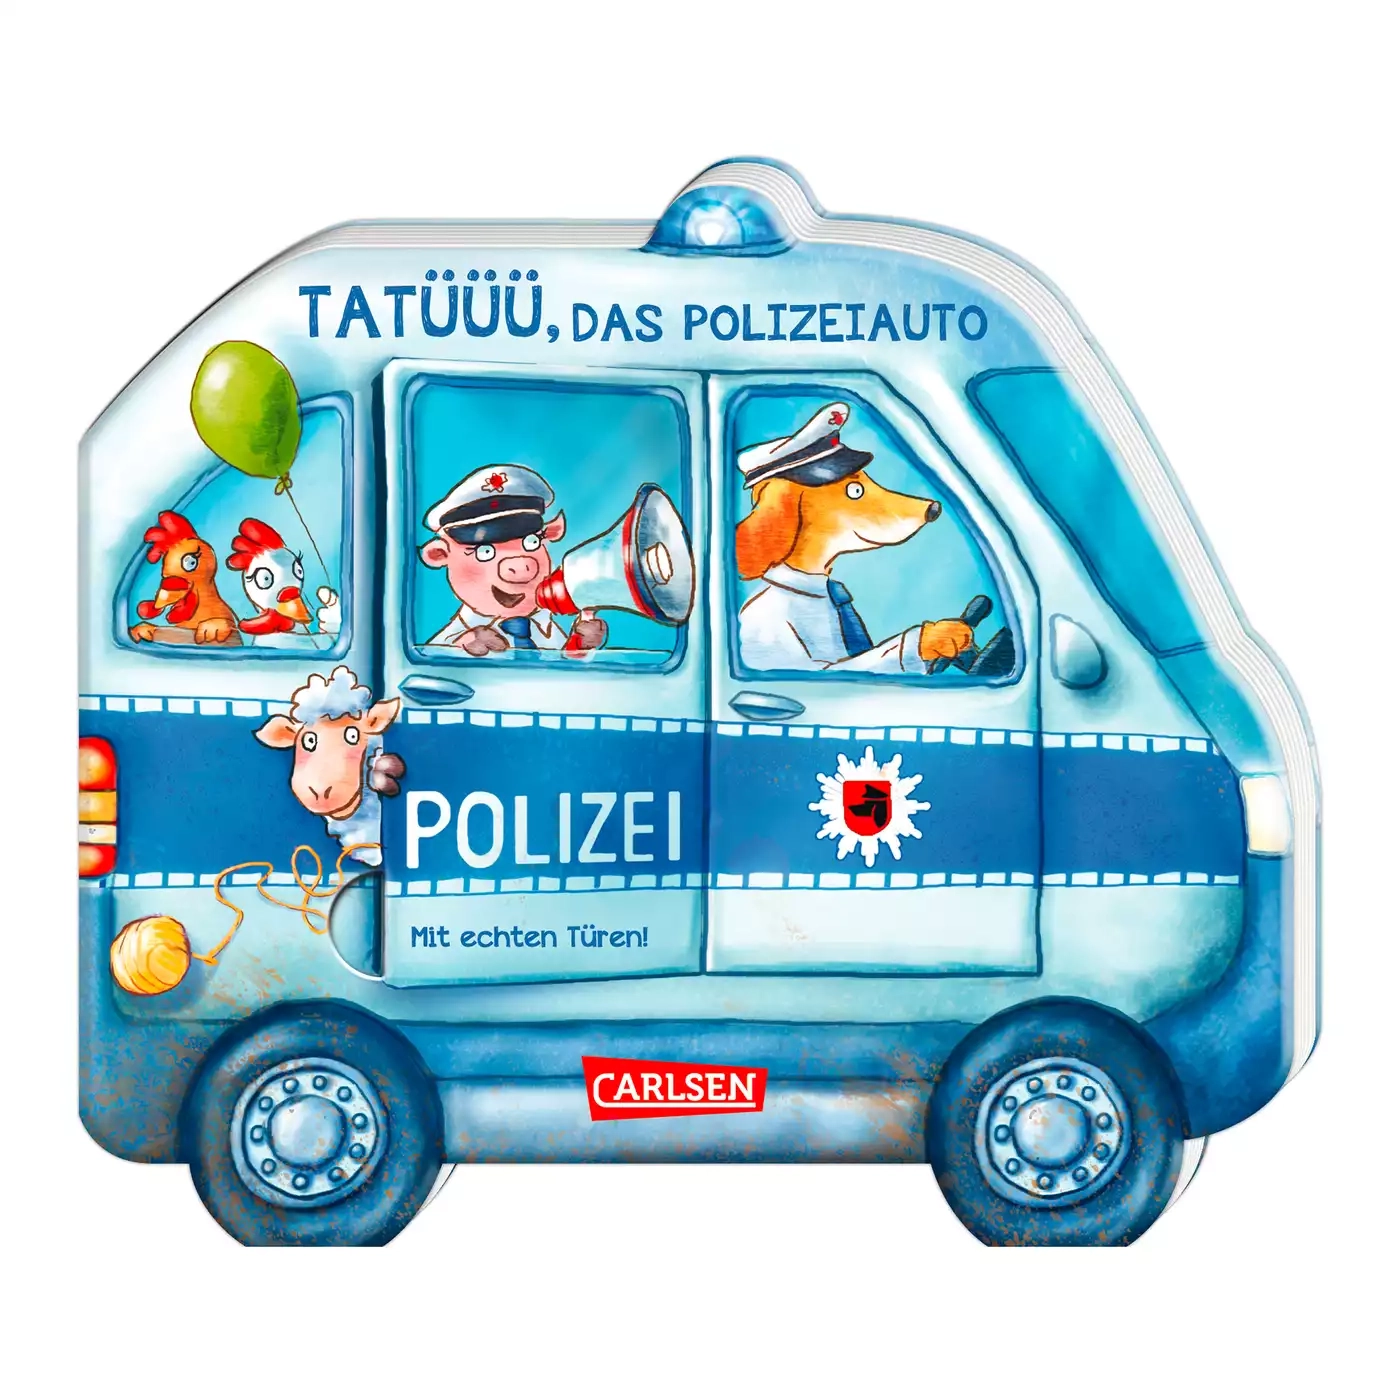 Tatüüü, das Polizeiauto CARLSEN 2000577792009 3